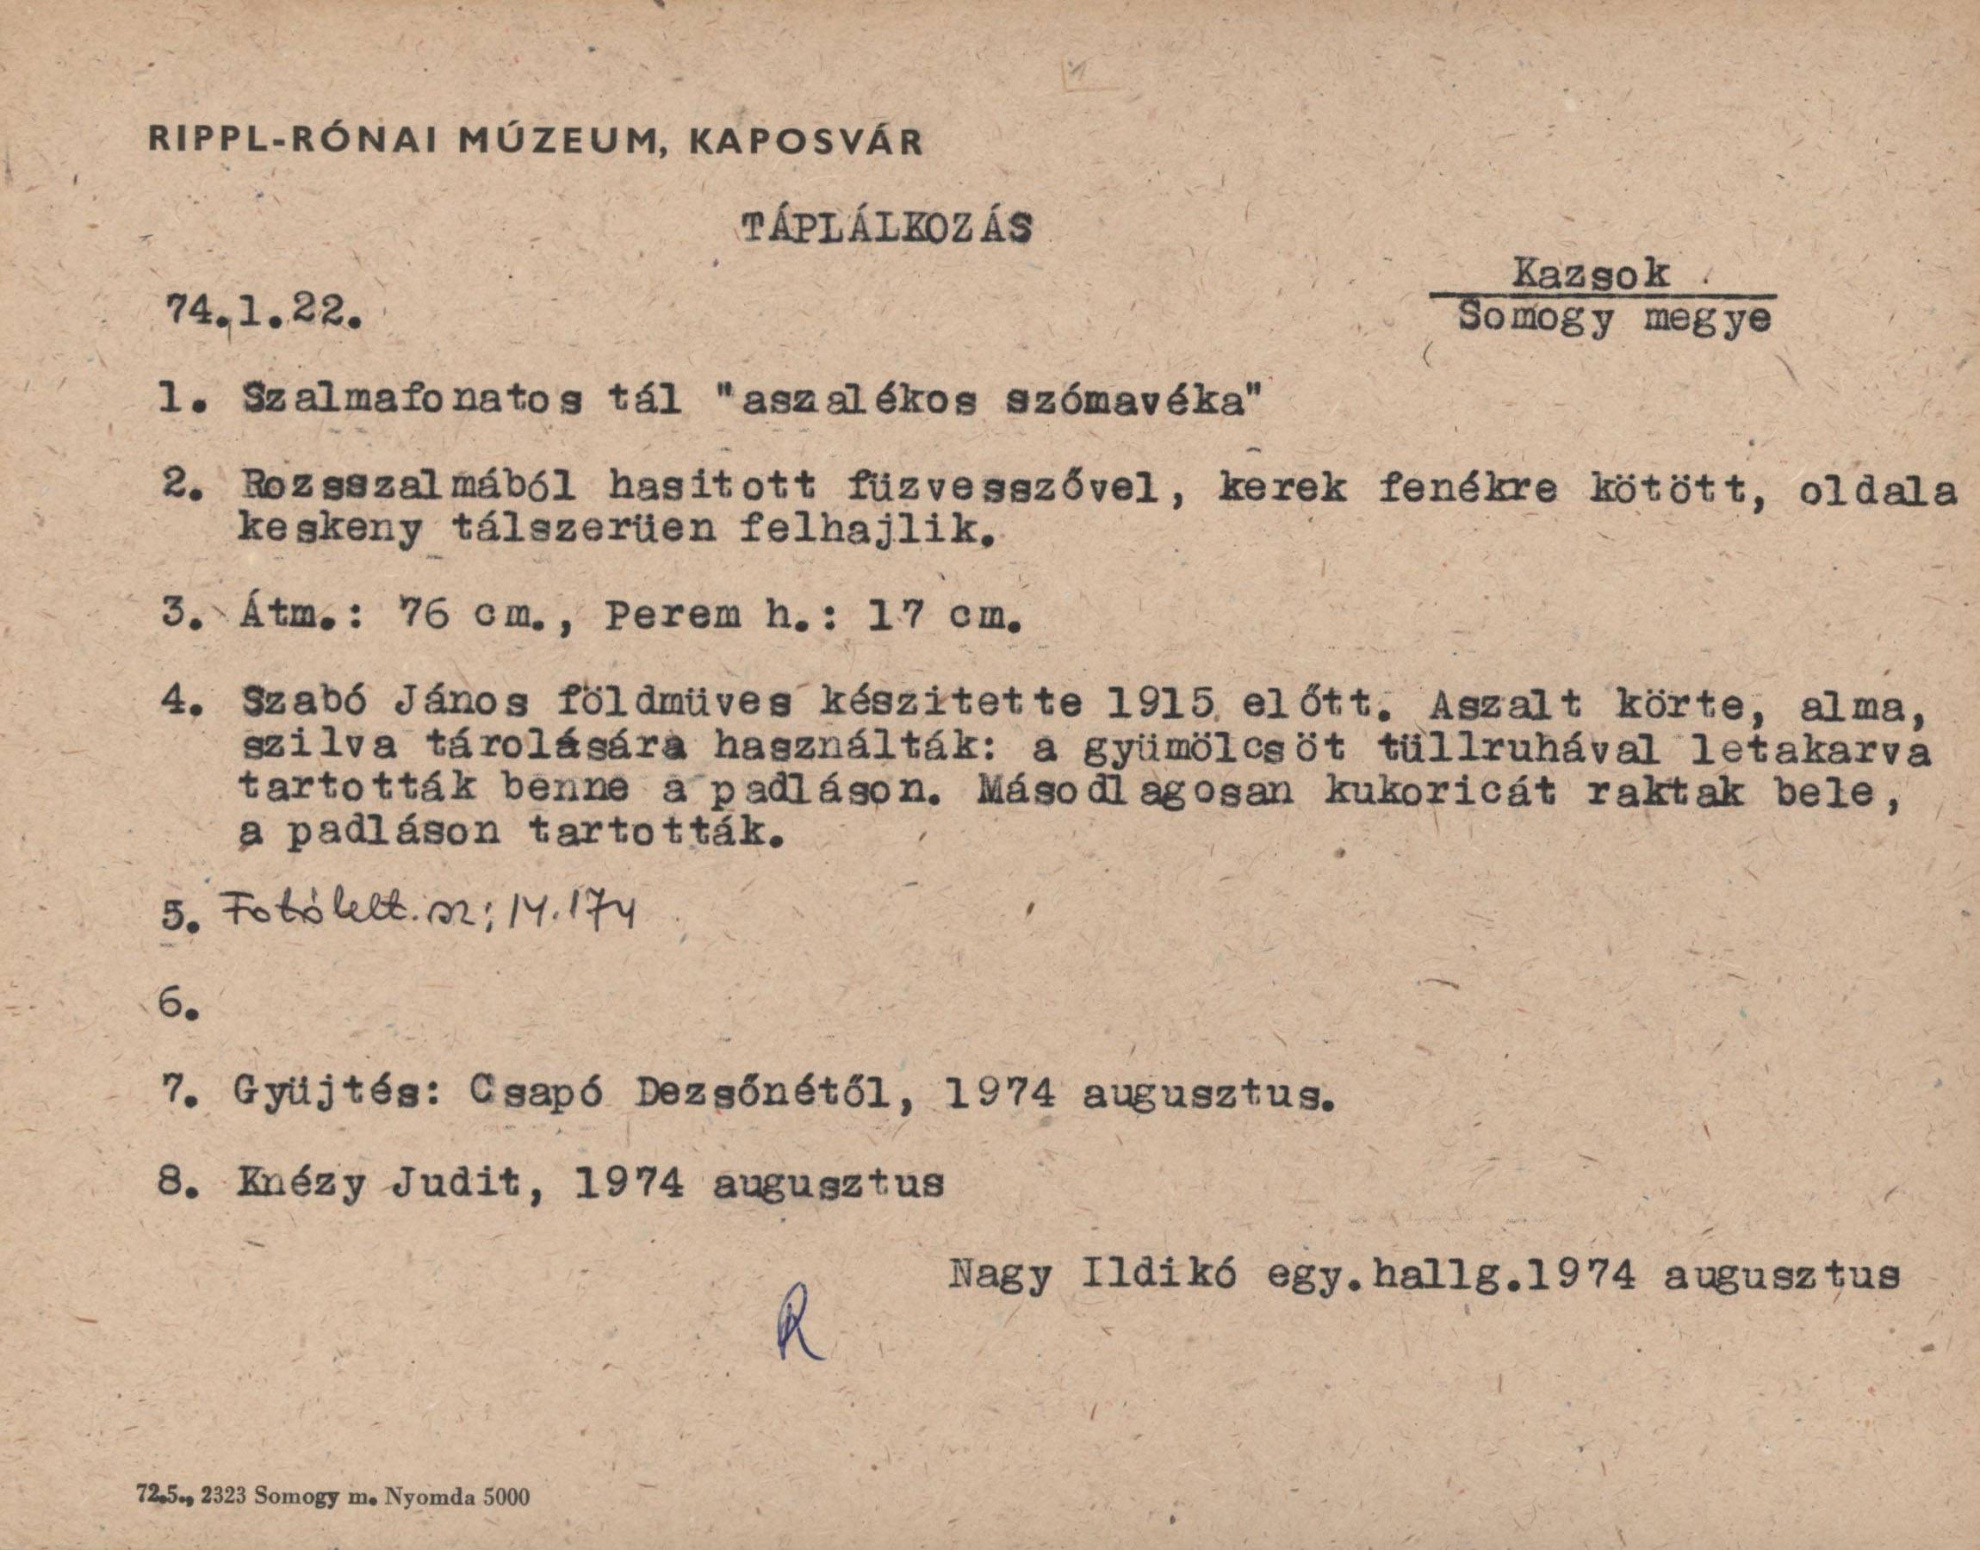 Szalmafonatos tál "aszalékos szómavéka" (Rippl-Rónai Múzeum CC BY-NC-SA)